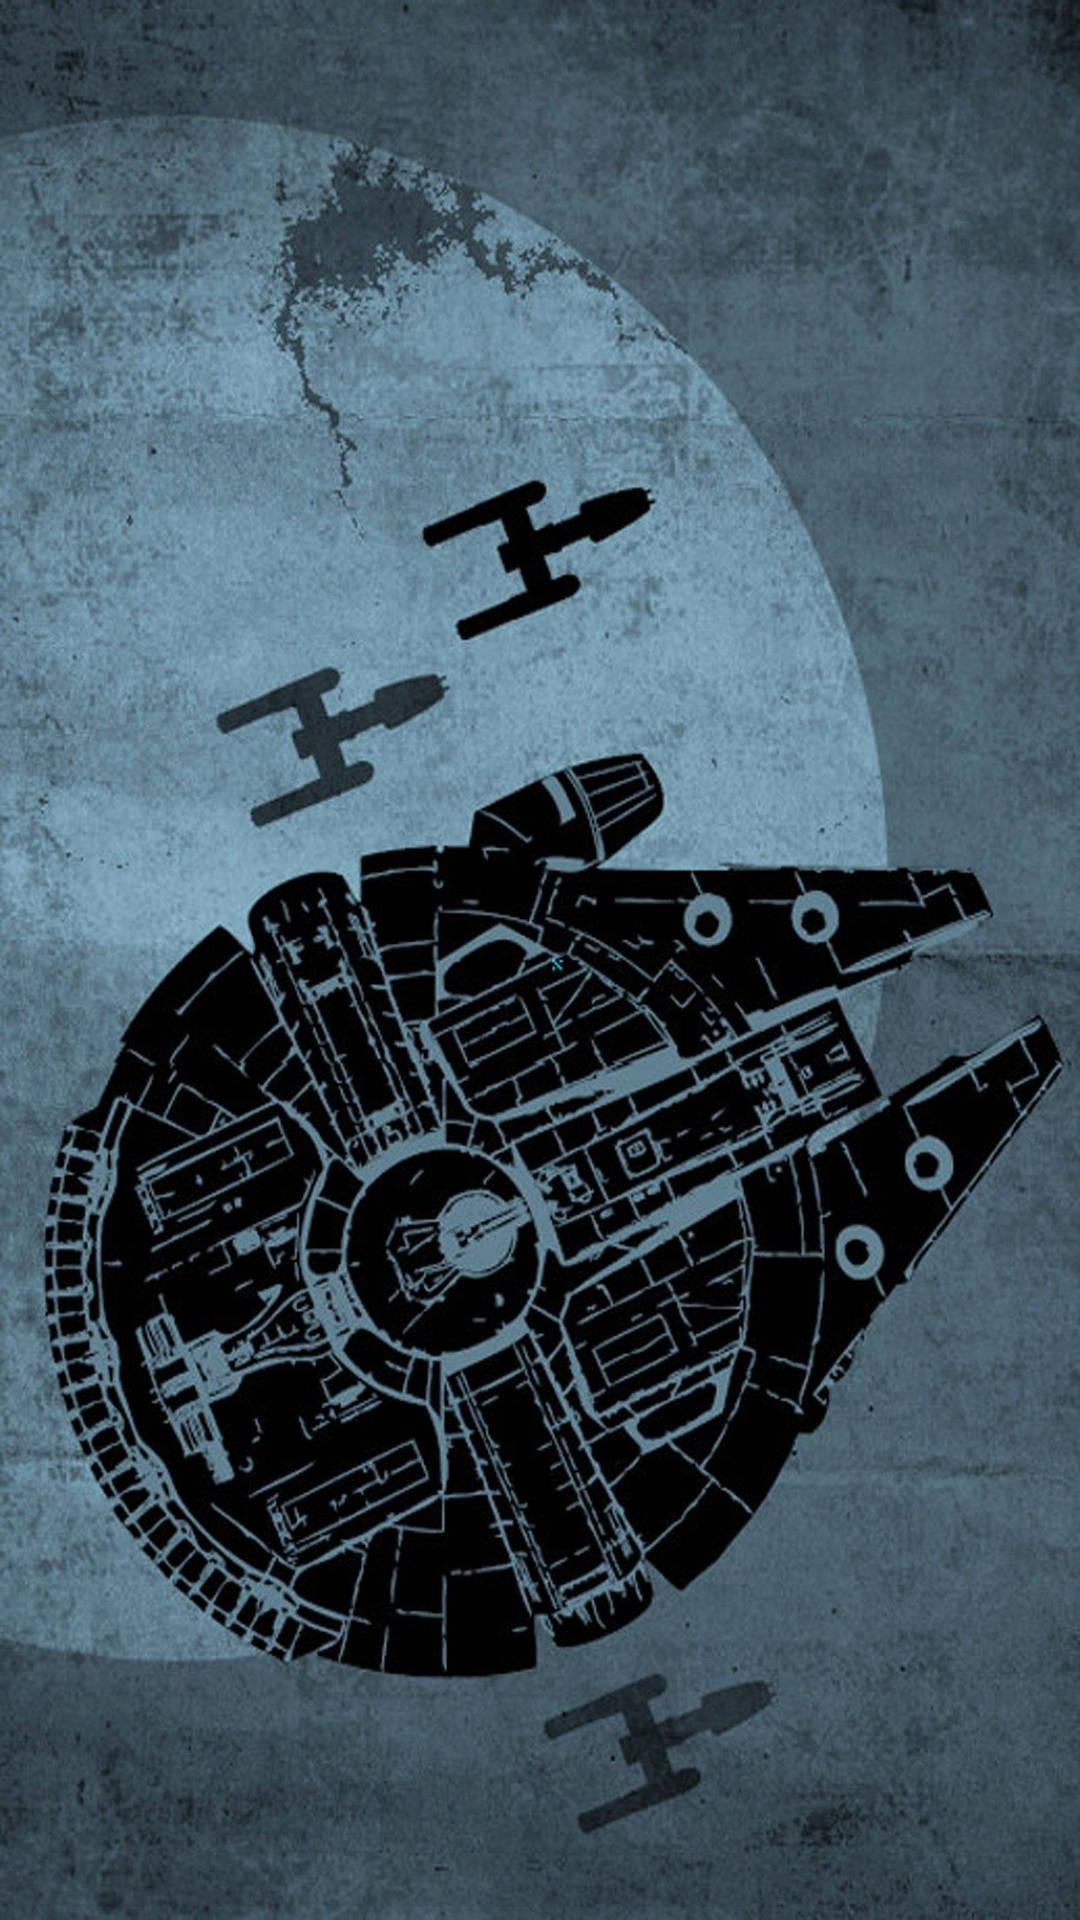 Ilustracióndel Halcón Milenario En El Teléfono Celular De Star Wars. Fondo de pantalla